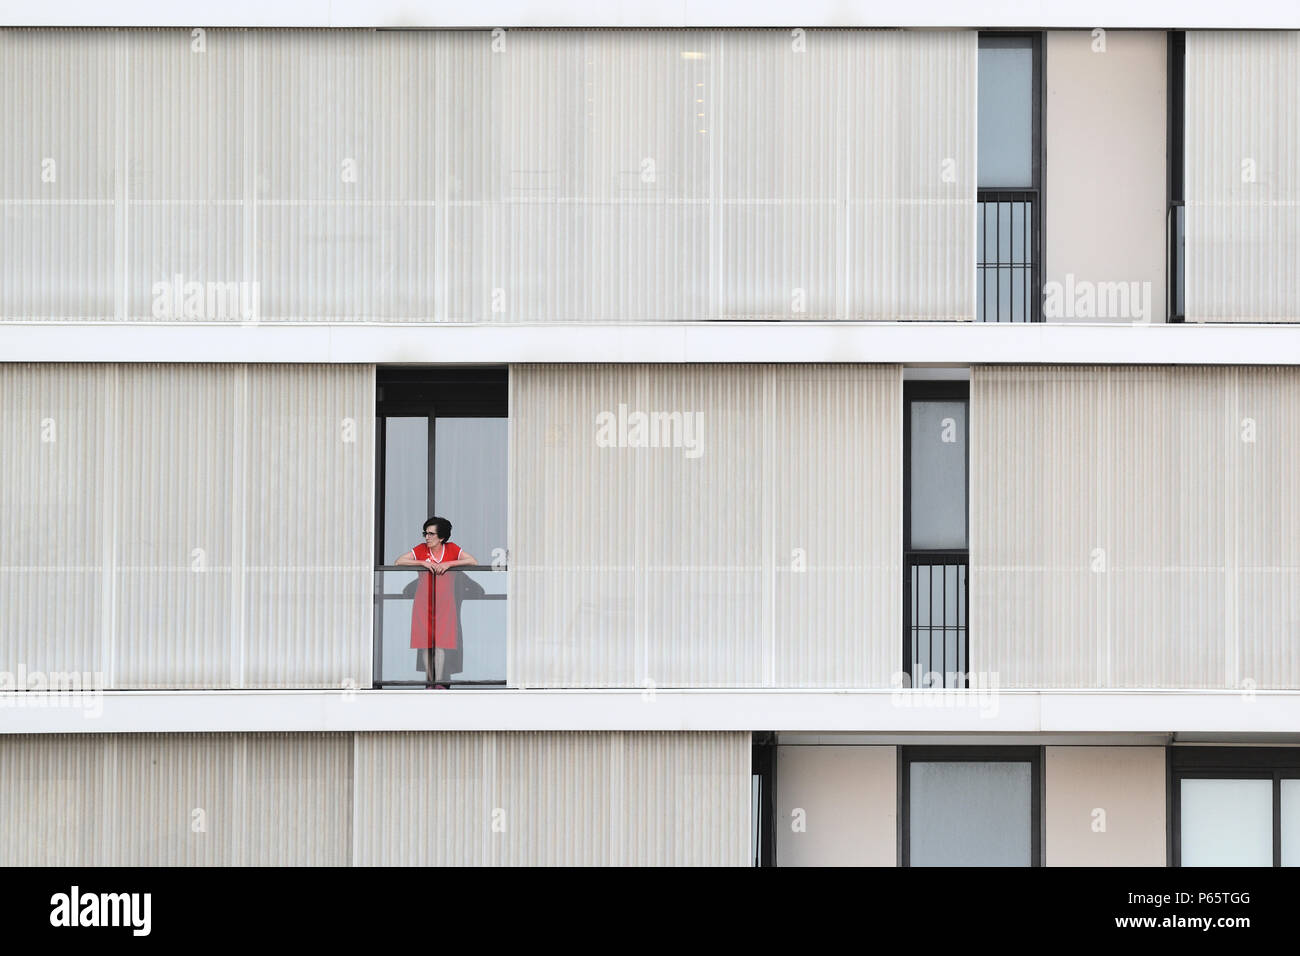 BARCELONA - Juni 28: Einsame Frau, stehend auf einem Balkon eines modernen Fassade, am 28. Juni 2018 in Barcelona Stockfoto